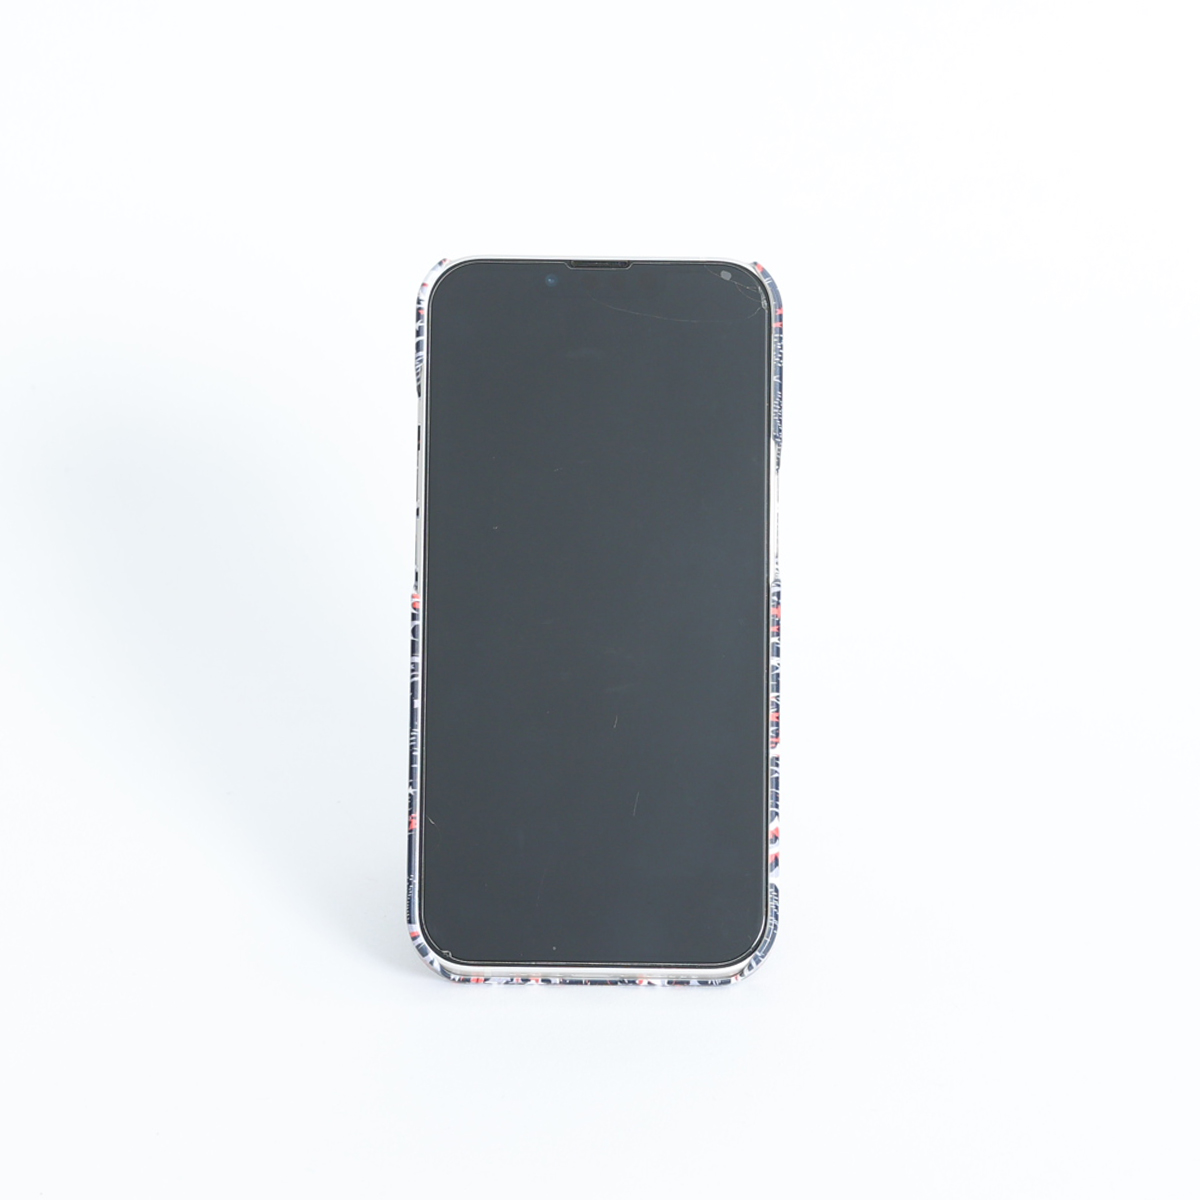 11月下旬お届け予定ご受注商品『Viola』 Android hard case画像